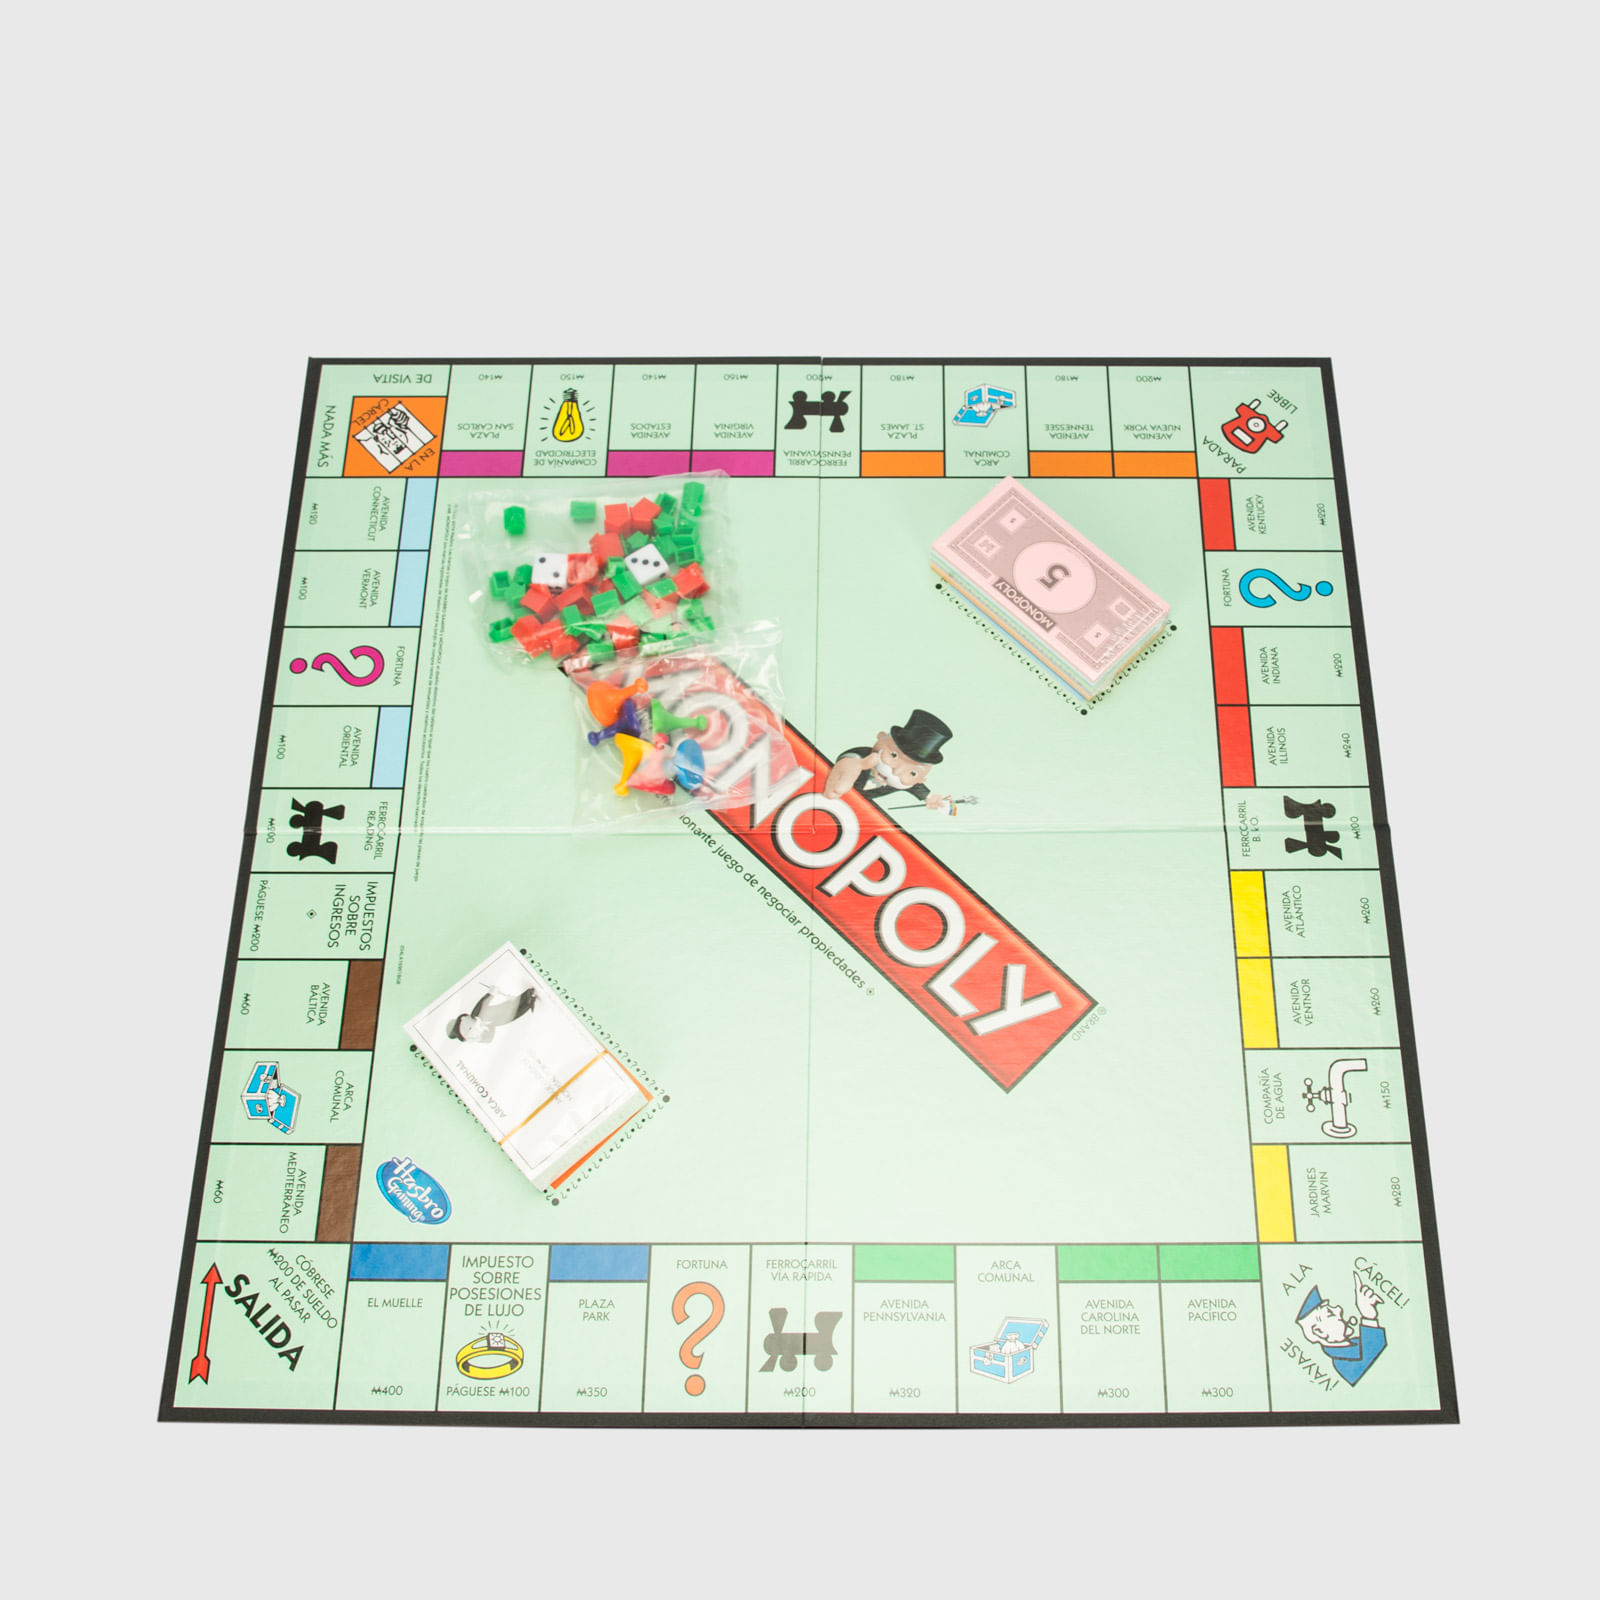 Monopolio modular en